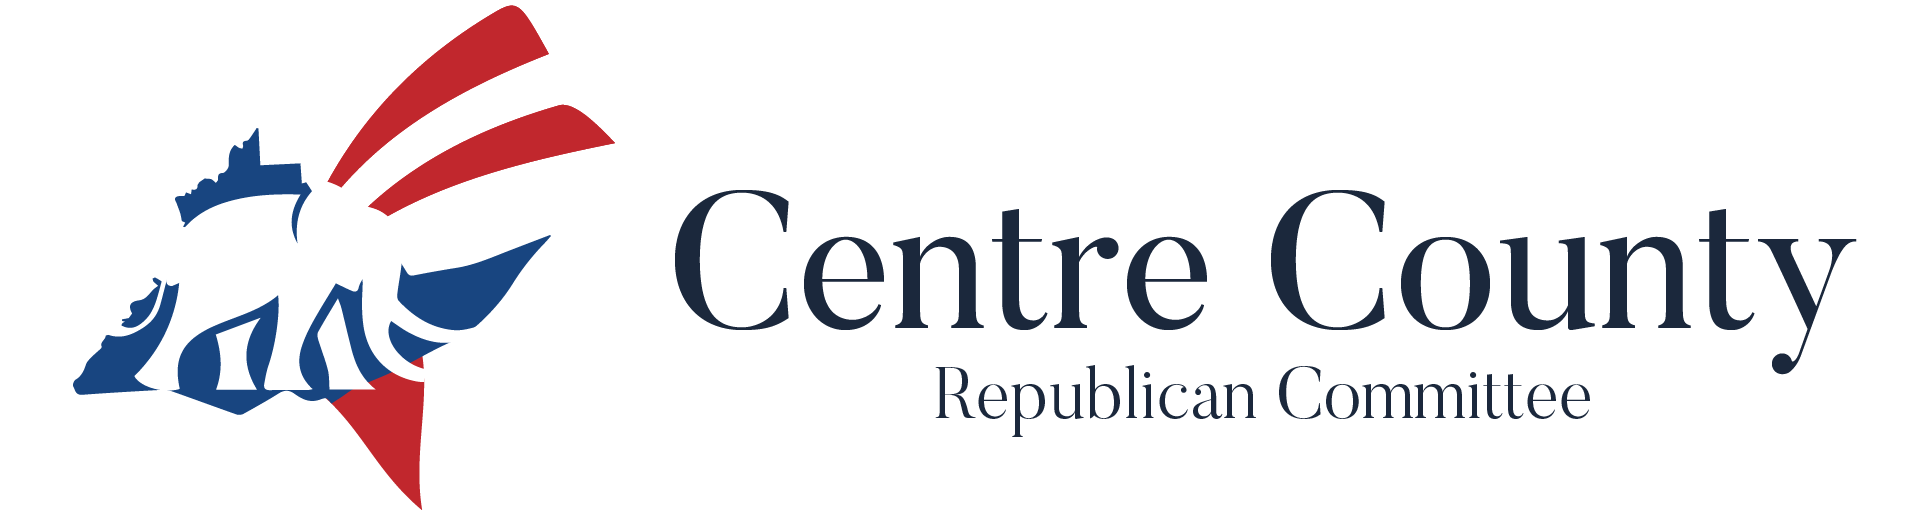 Ccrc logo temp